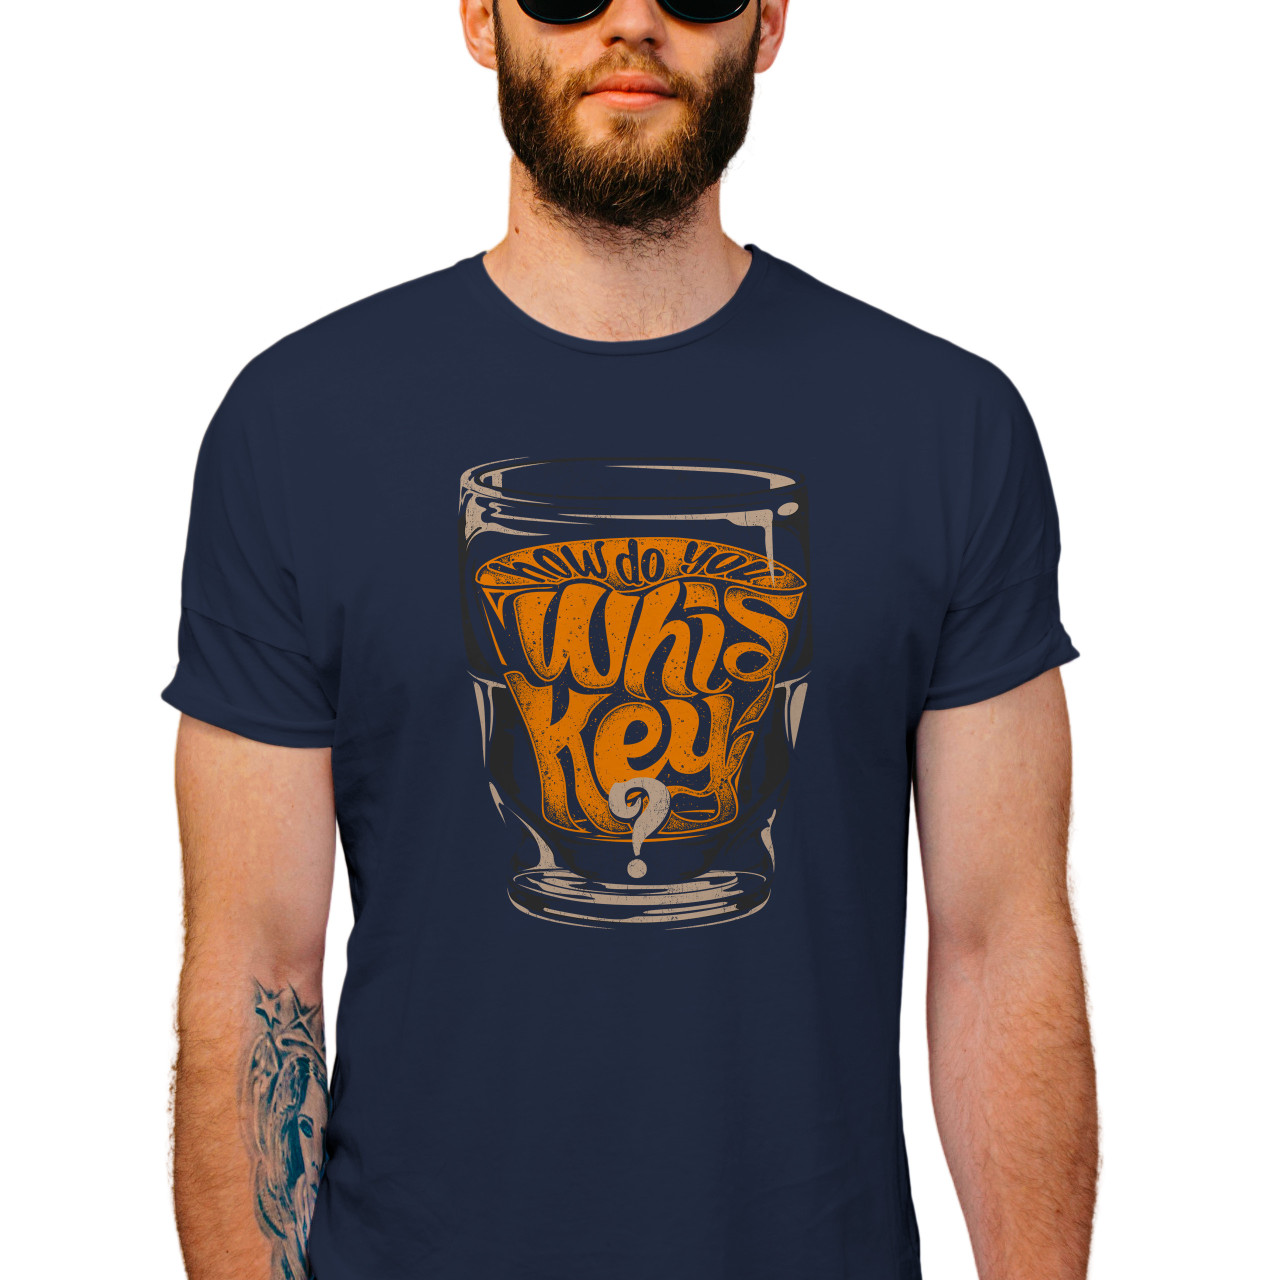 Pánské tričko s potiskem “How do you whiskey?"